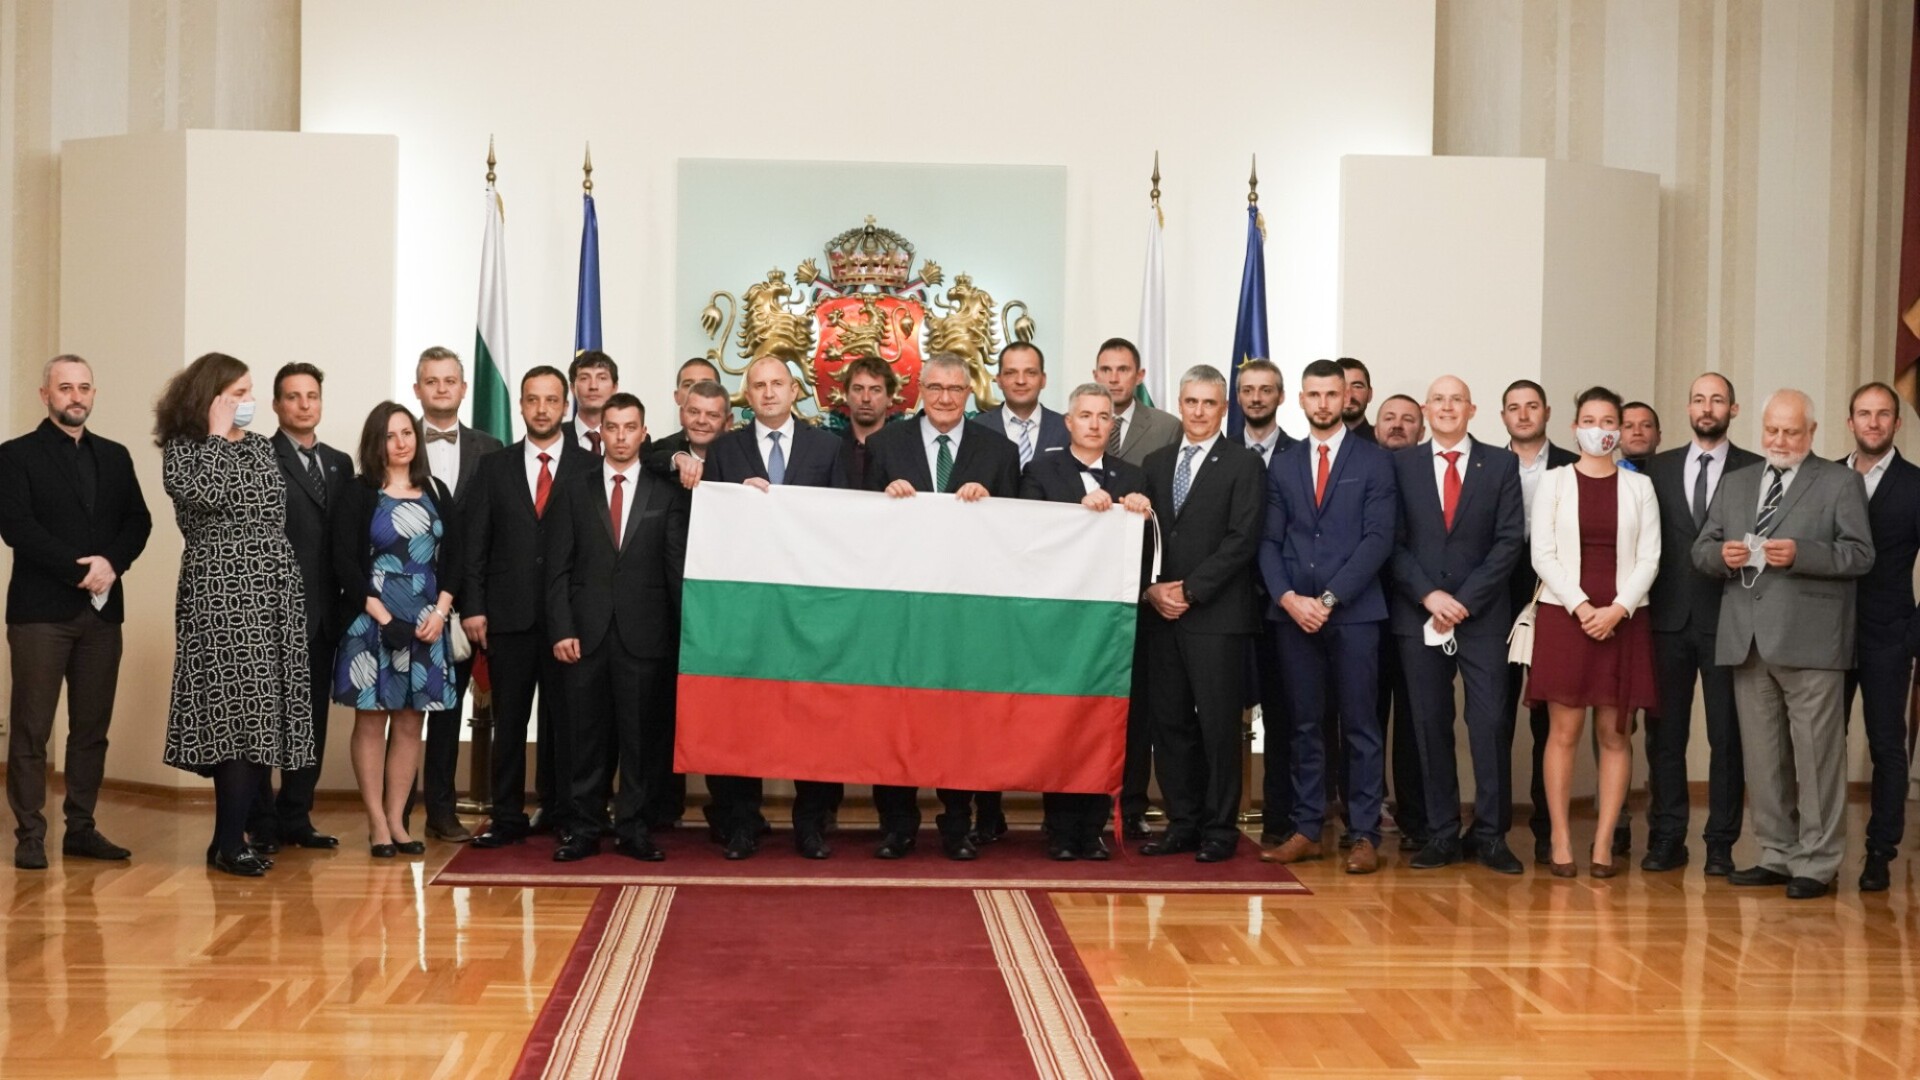 Президентът връчи националния флаг на проф. Пимпирев